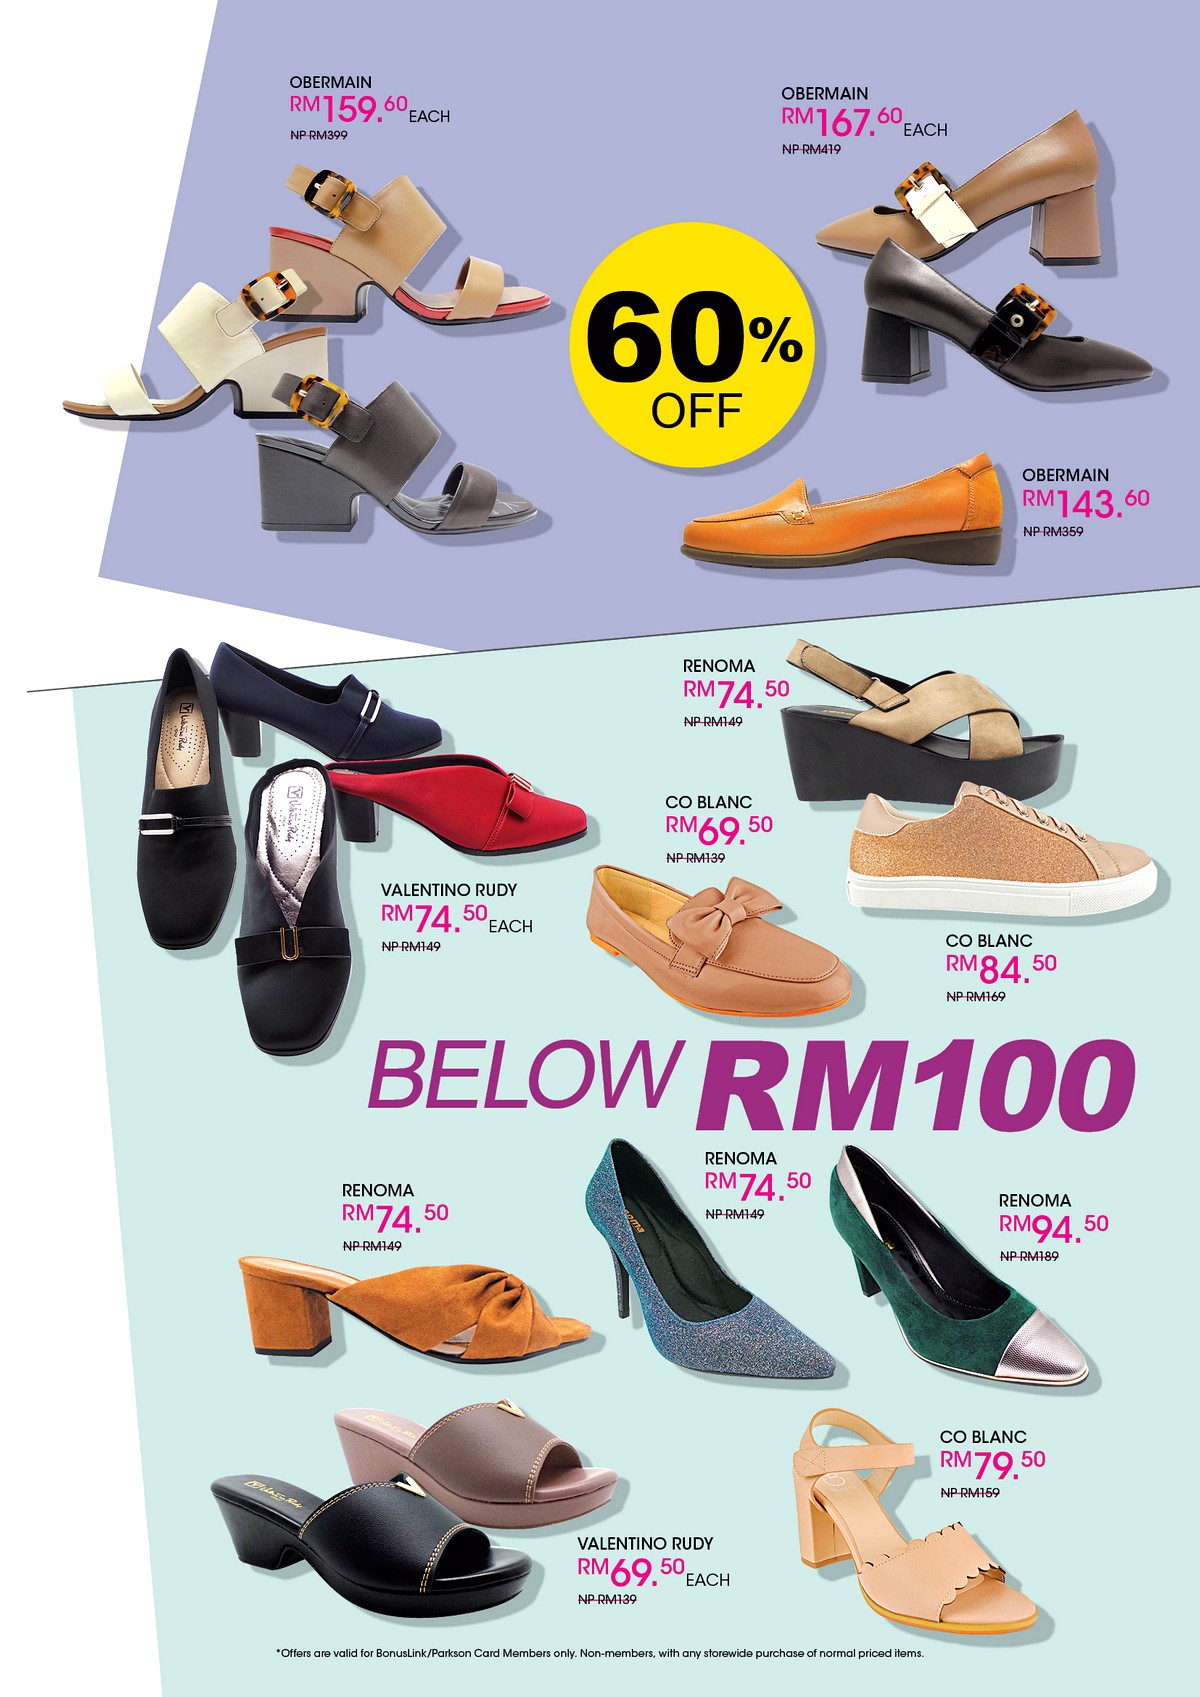 MAS-2020-FA5 - Fashion Lifestyle & Department Store Footwear Johor Kedah Kelantan Kuala Lumpur Melaka Nationwide Negeri Sembilan Pahang Penang Perak Perlis Putrajaya Sabah Sarawak Selangor Terengganu Warehouse Sale & Clearance in Malaysia 